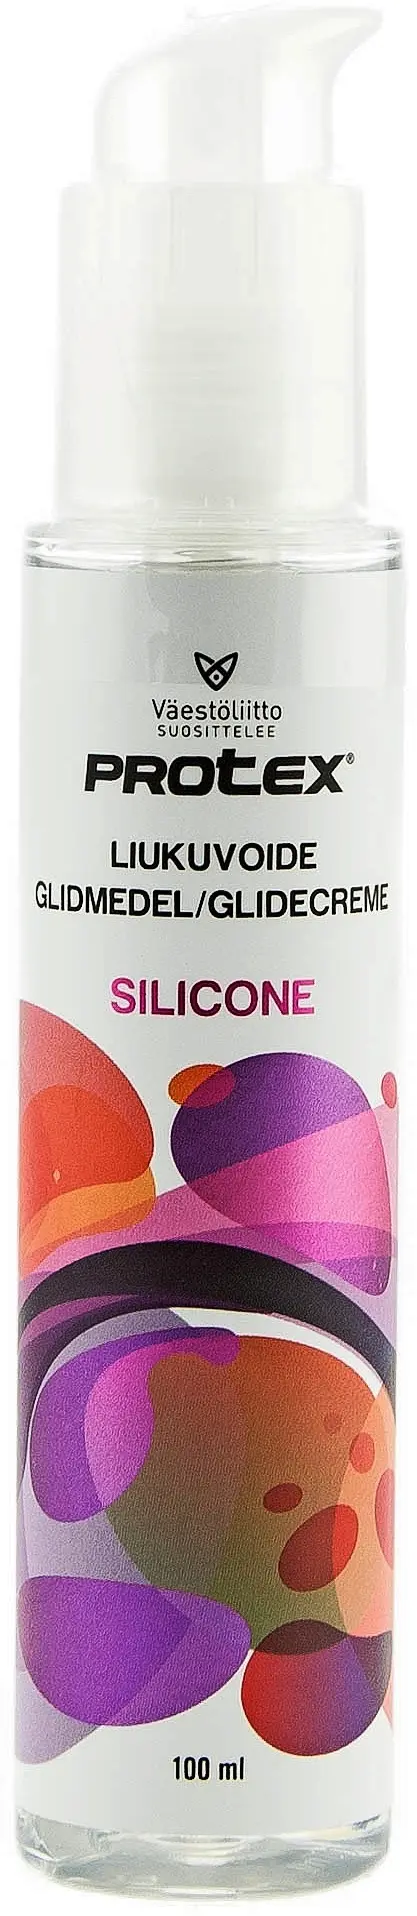 Protex 100ml liukuvoide silikonipumppu